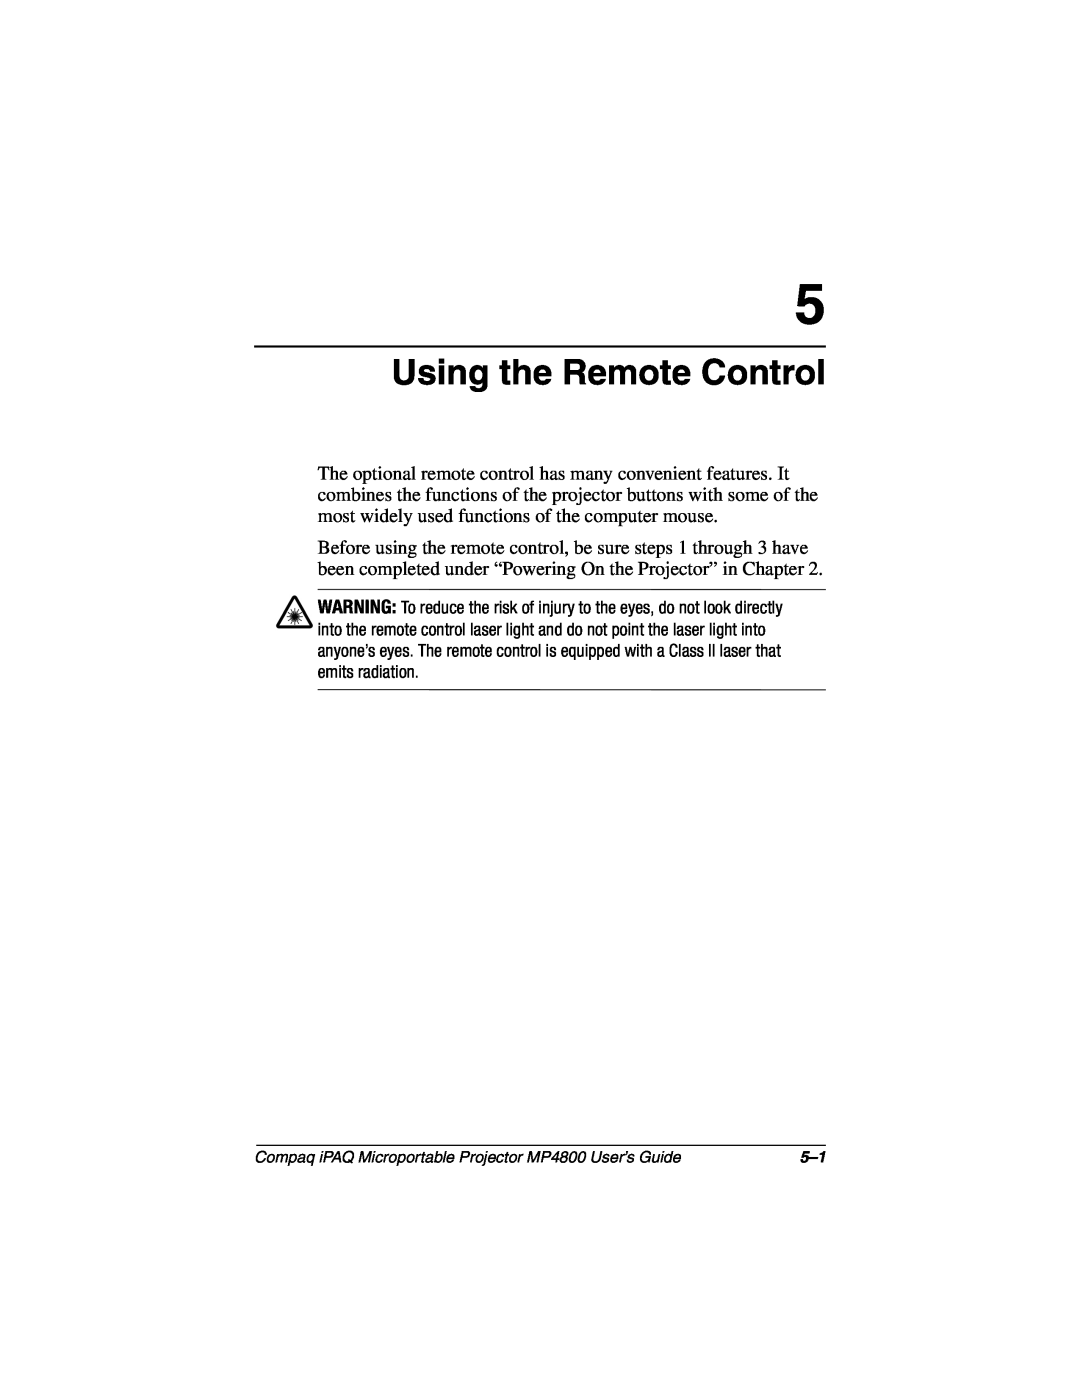 Compaq MP4800 manual Using the Remote Control 